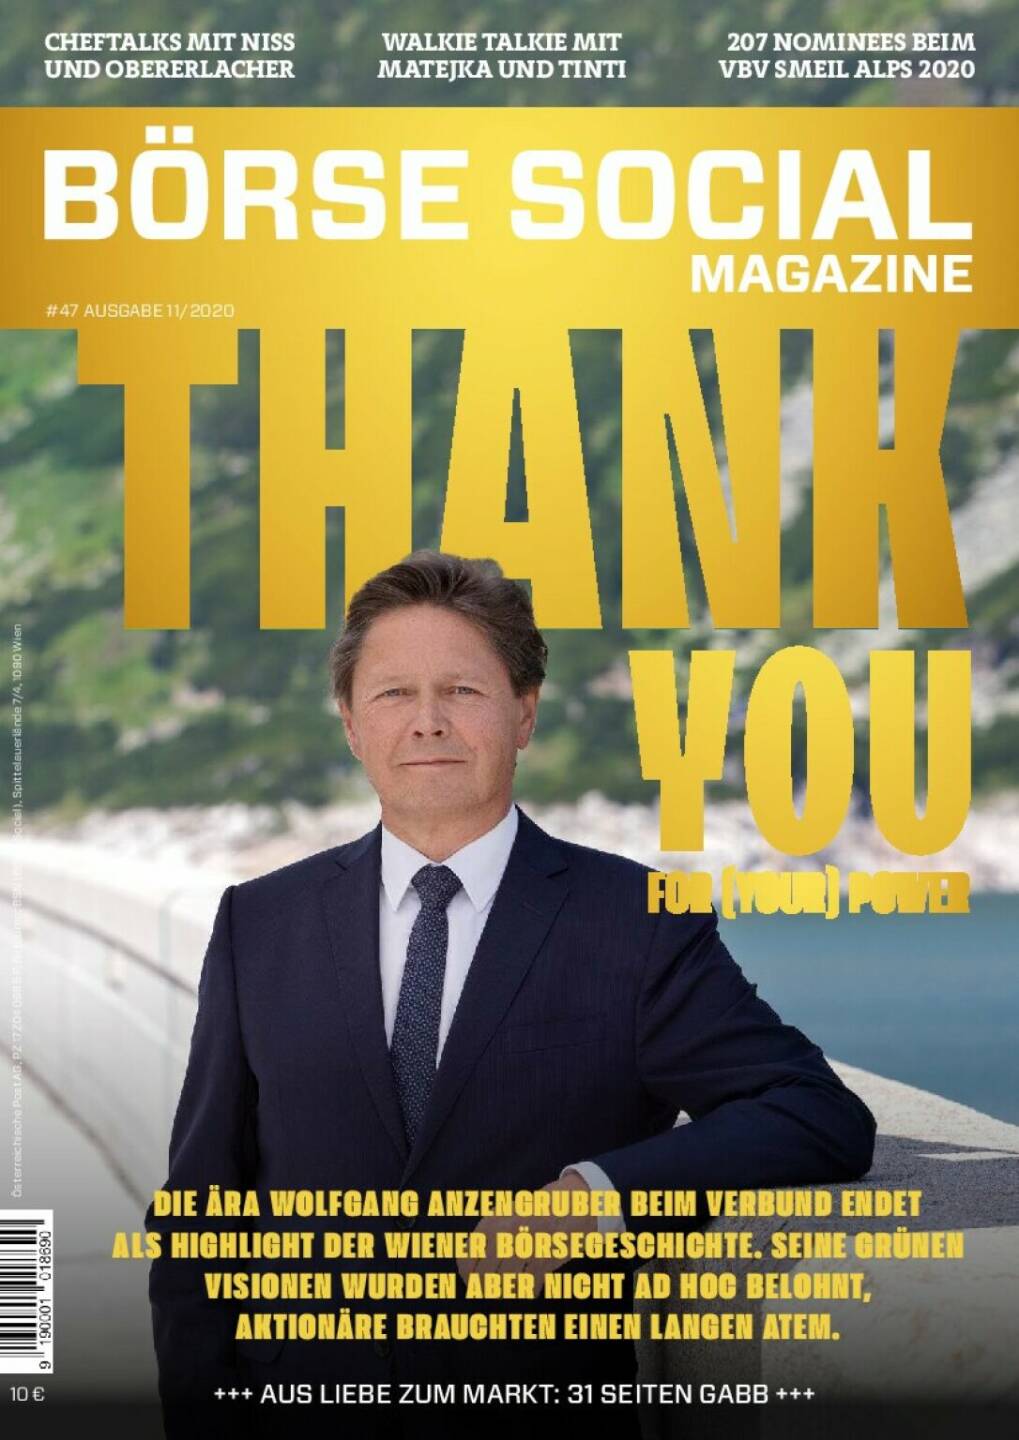 Magazine #47 - November 2020: Wolfgang Anzengruber bekommt nach Andreas Treichl das 2. Thank you-Cover. Einer der größten seiner Branche, auch gemessen an der Verbund-Aktienkursentwicklung im internationalen Vergleich